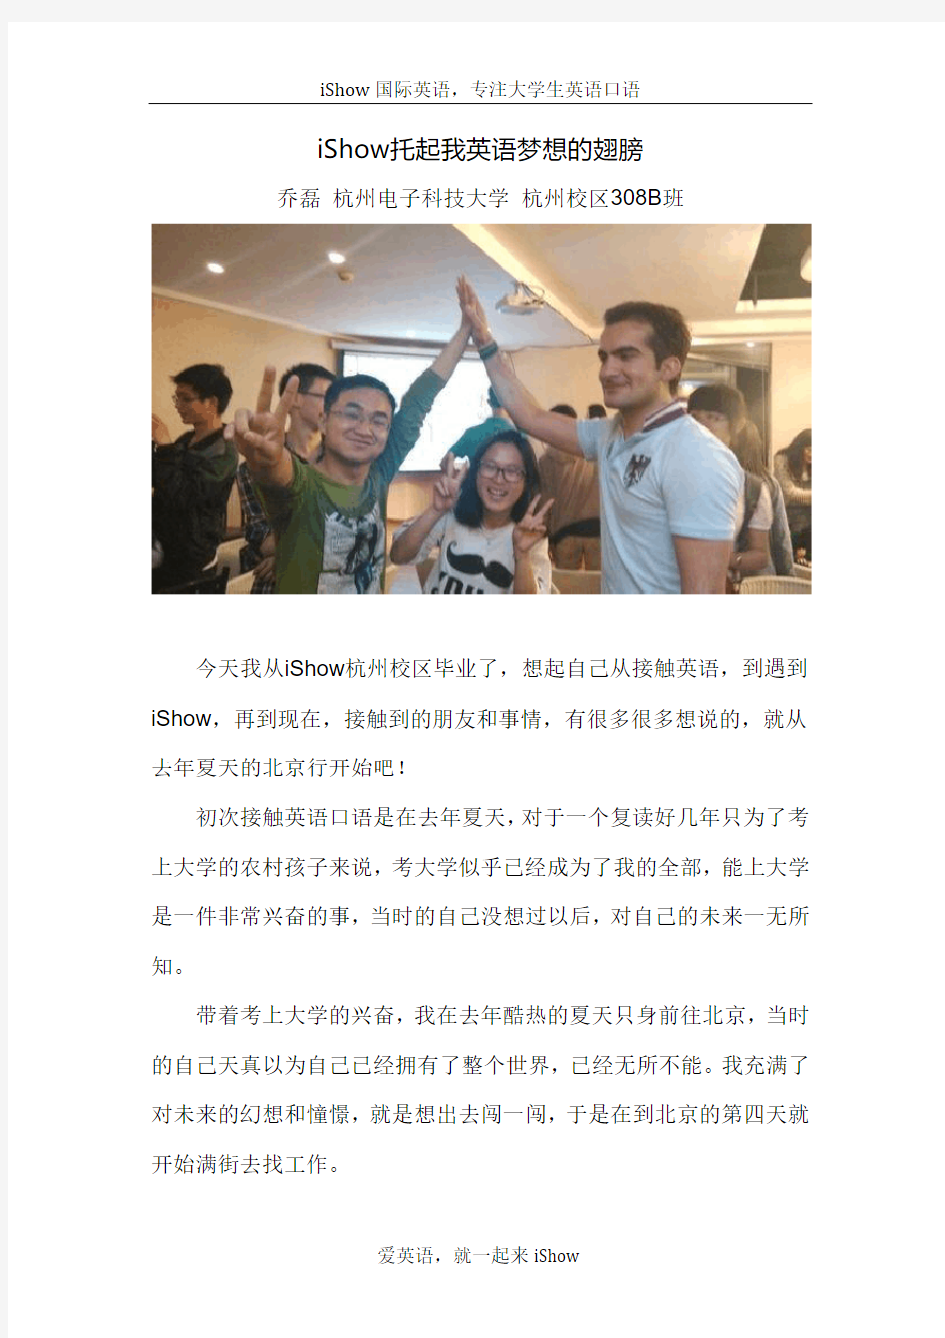 iShow托起我英语学习的梦想——杭州大学生在ishow国际学英语的故事